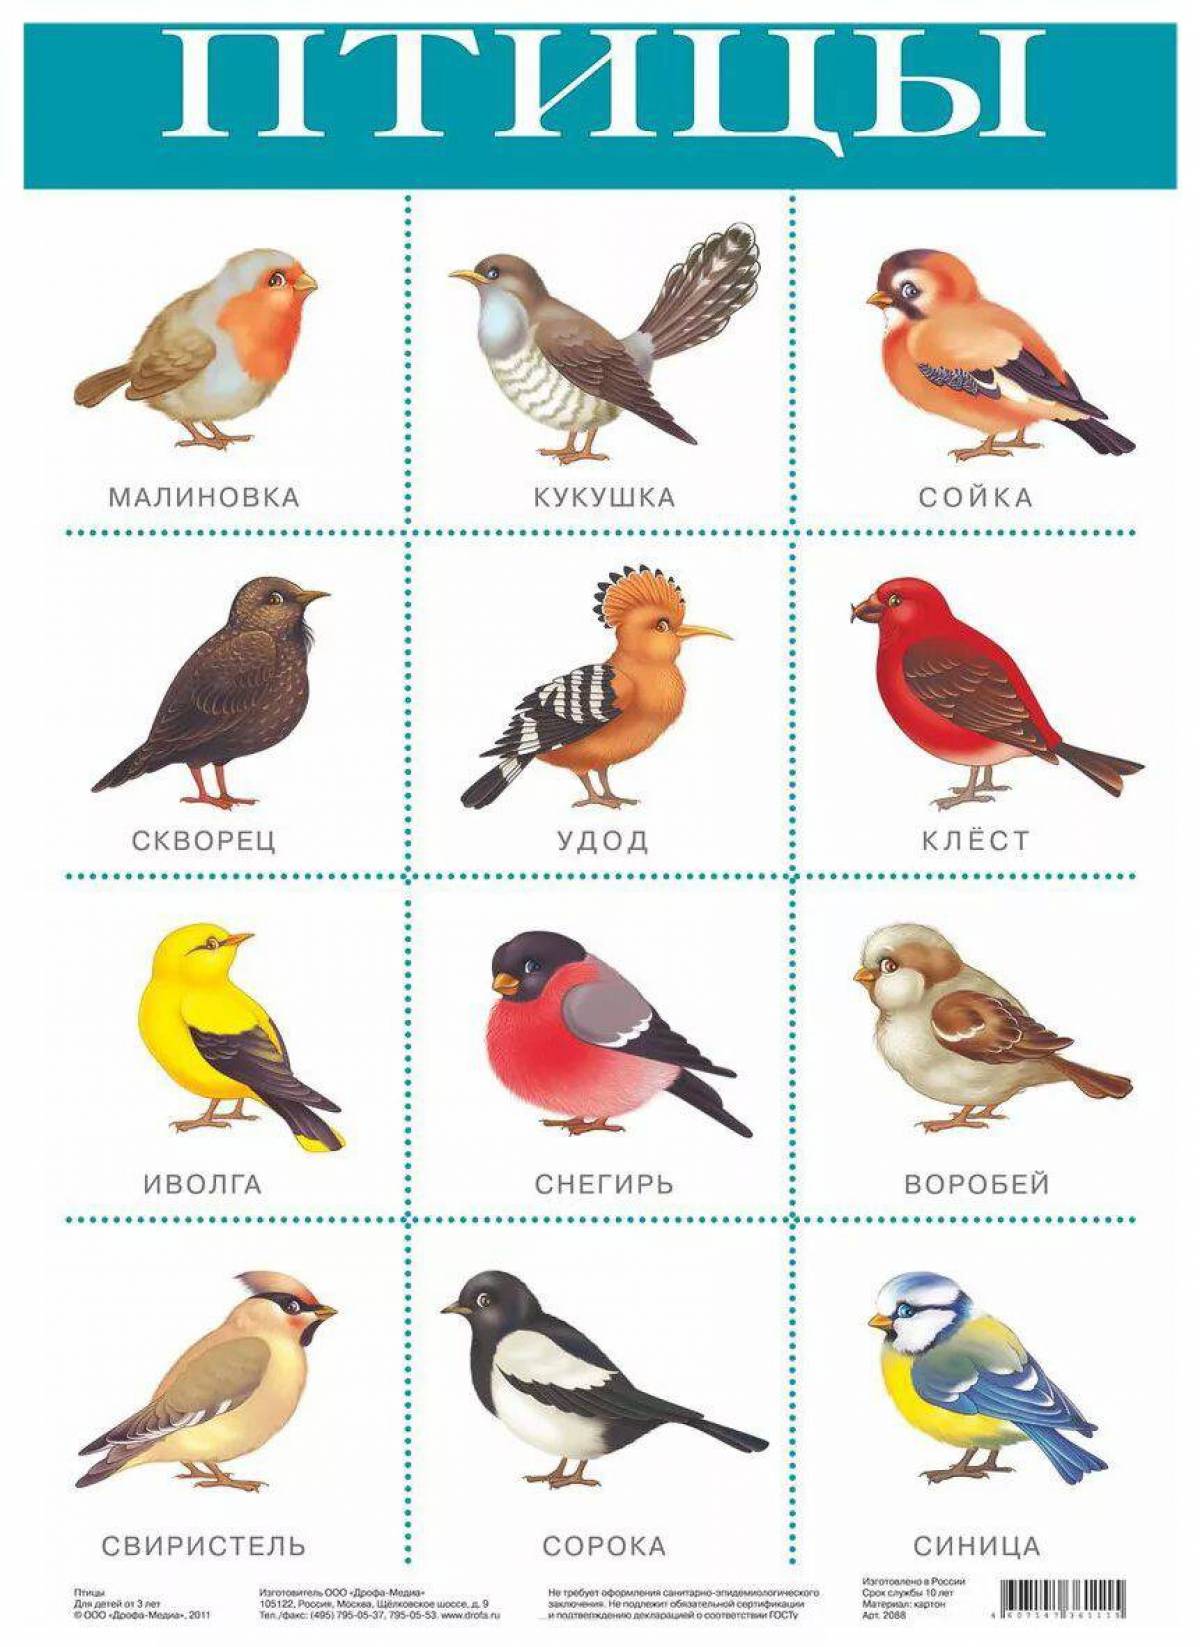 Птицы для детей 6 7 лет с названиями #39